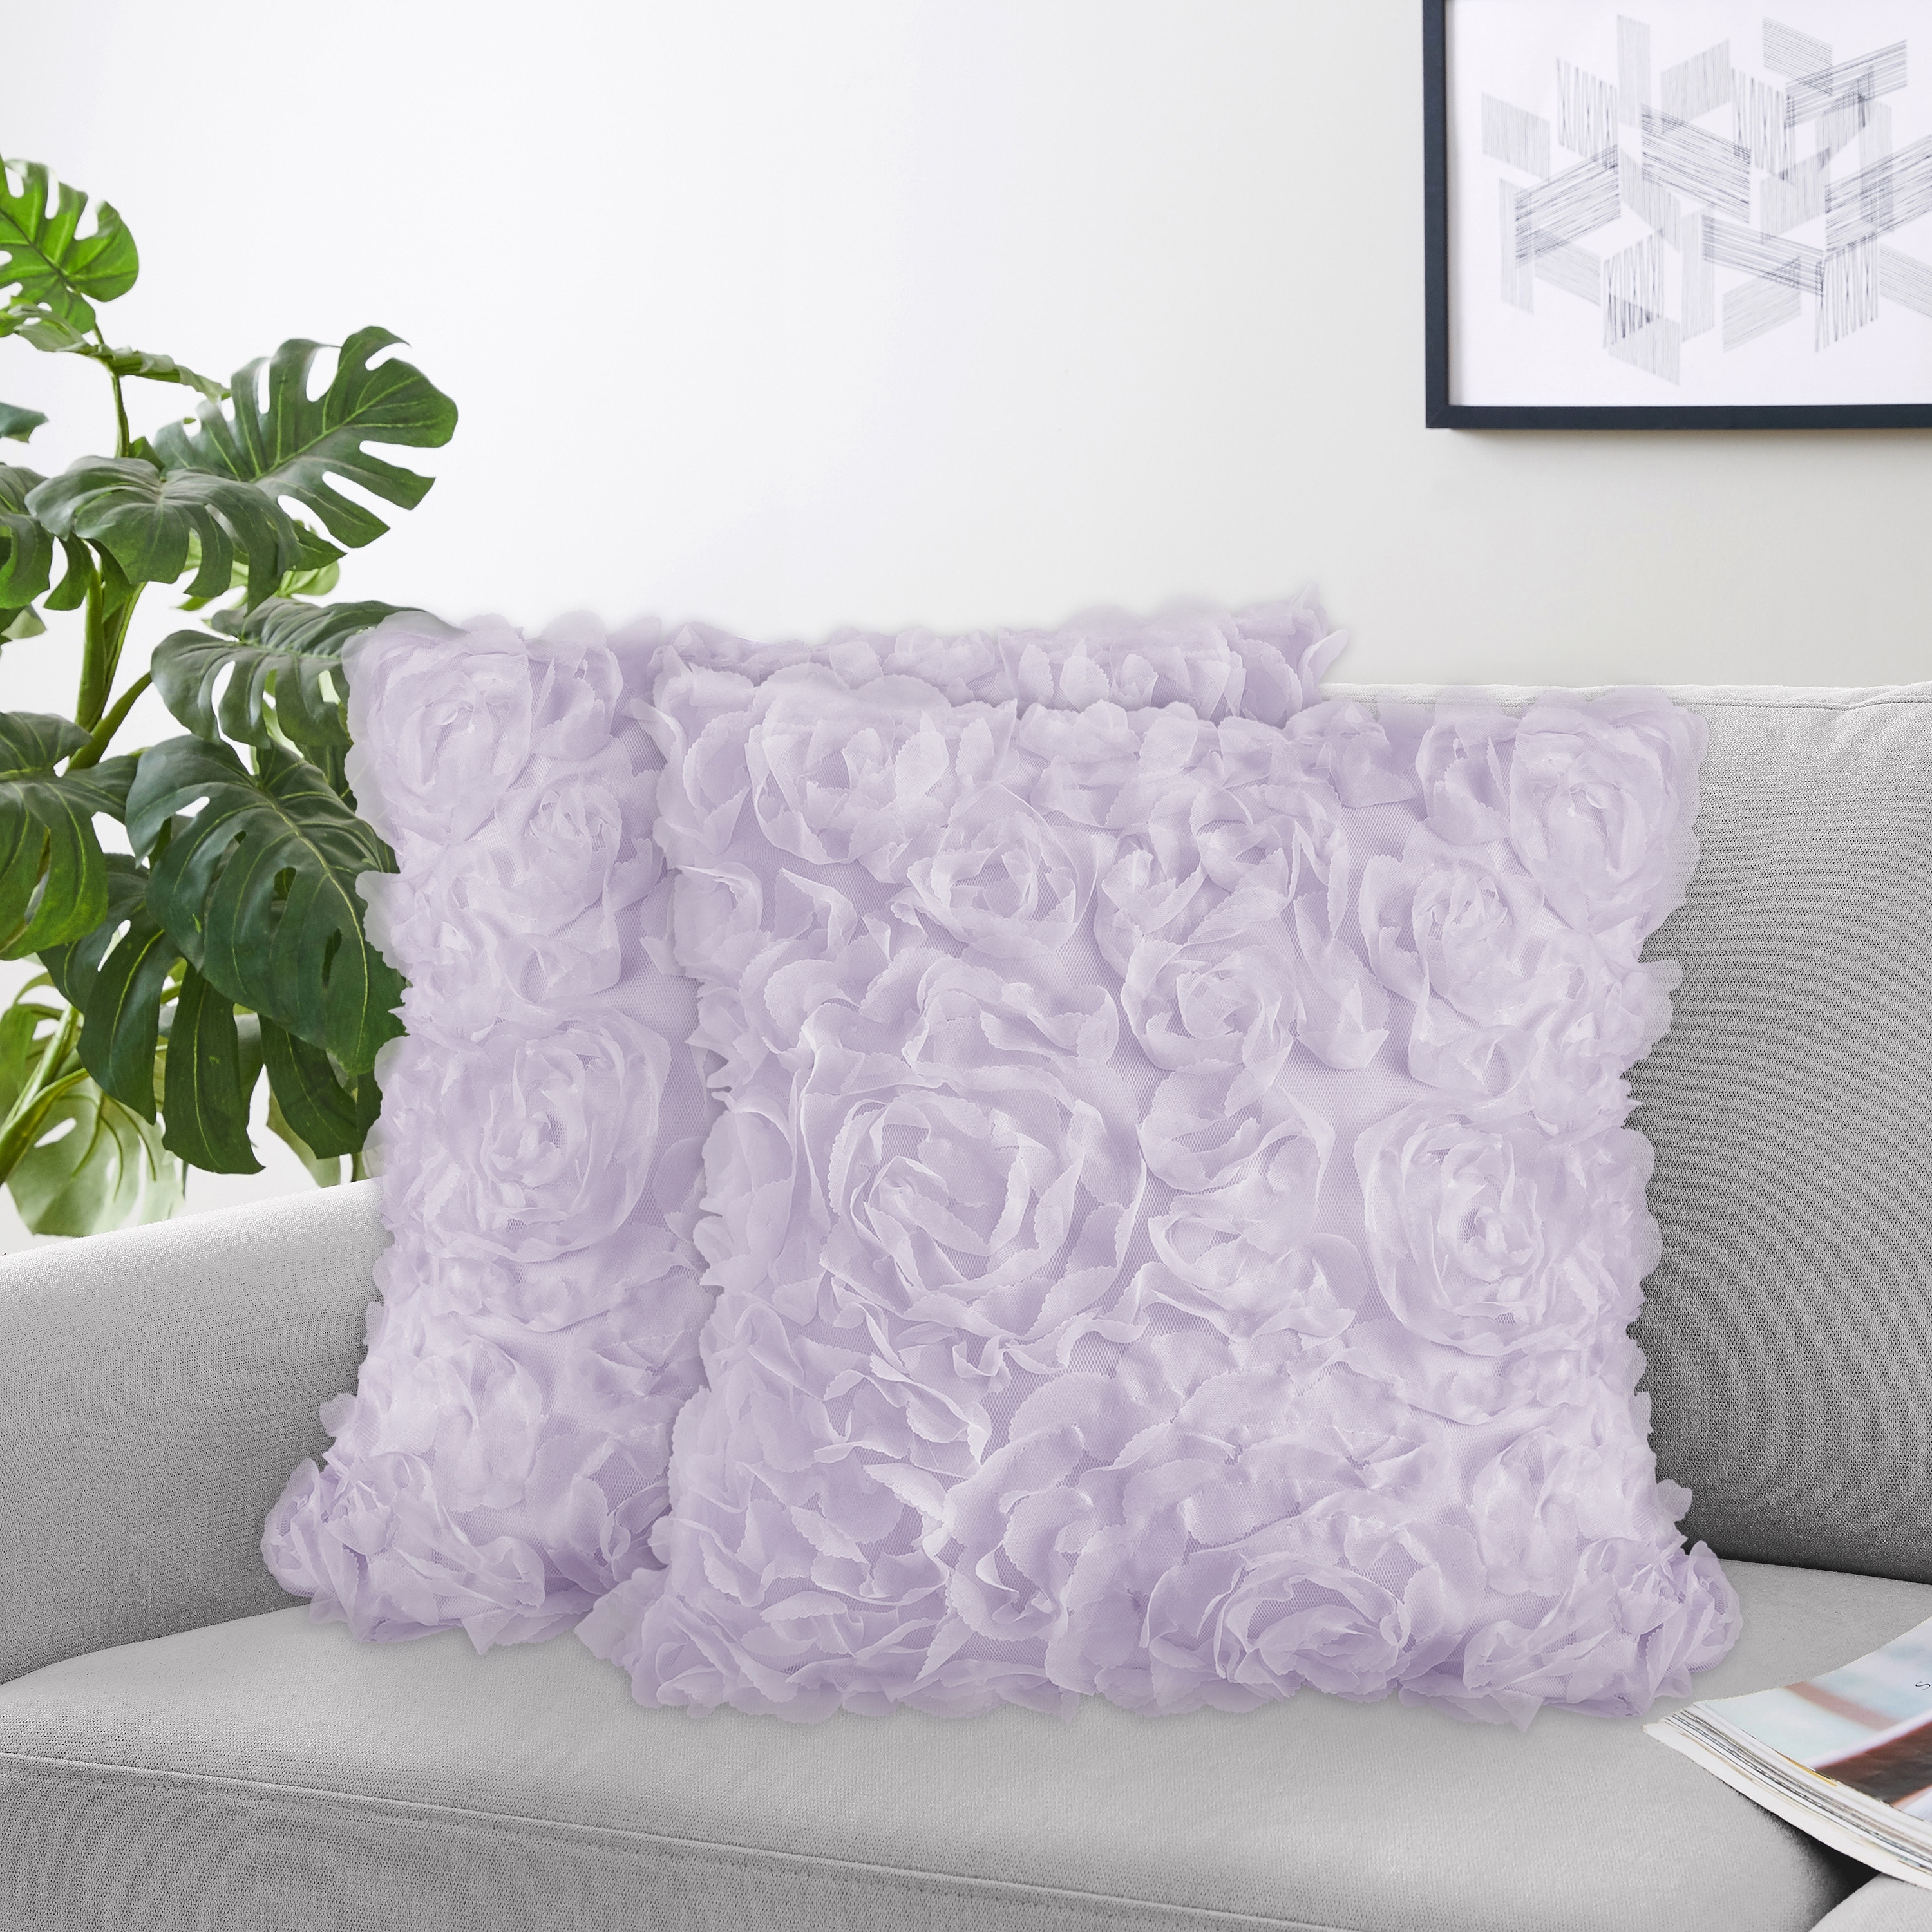 Creativemotions Luxury Vintage Fleur-de-lis ornament on royal purple Throw Pillow 18x18 Multicolor